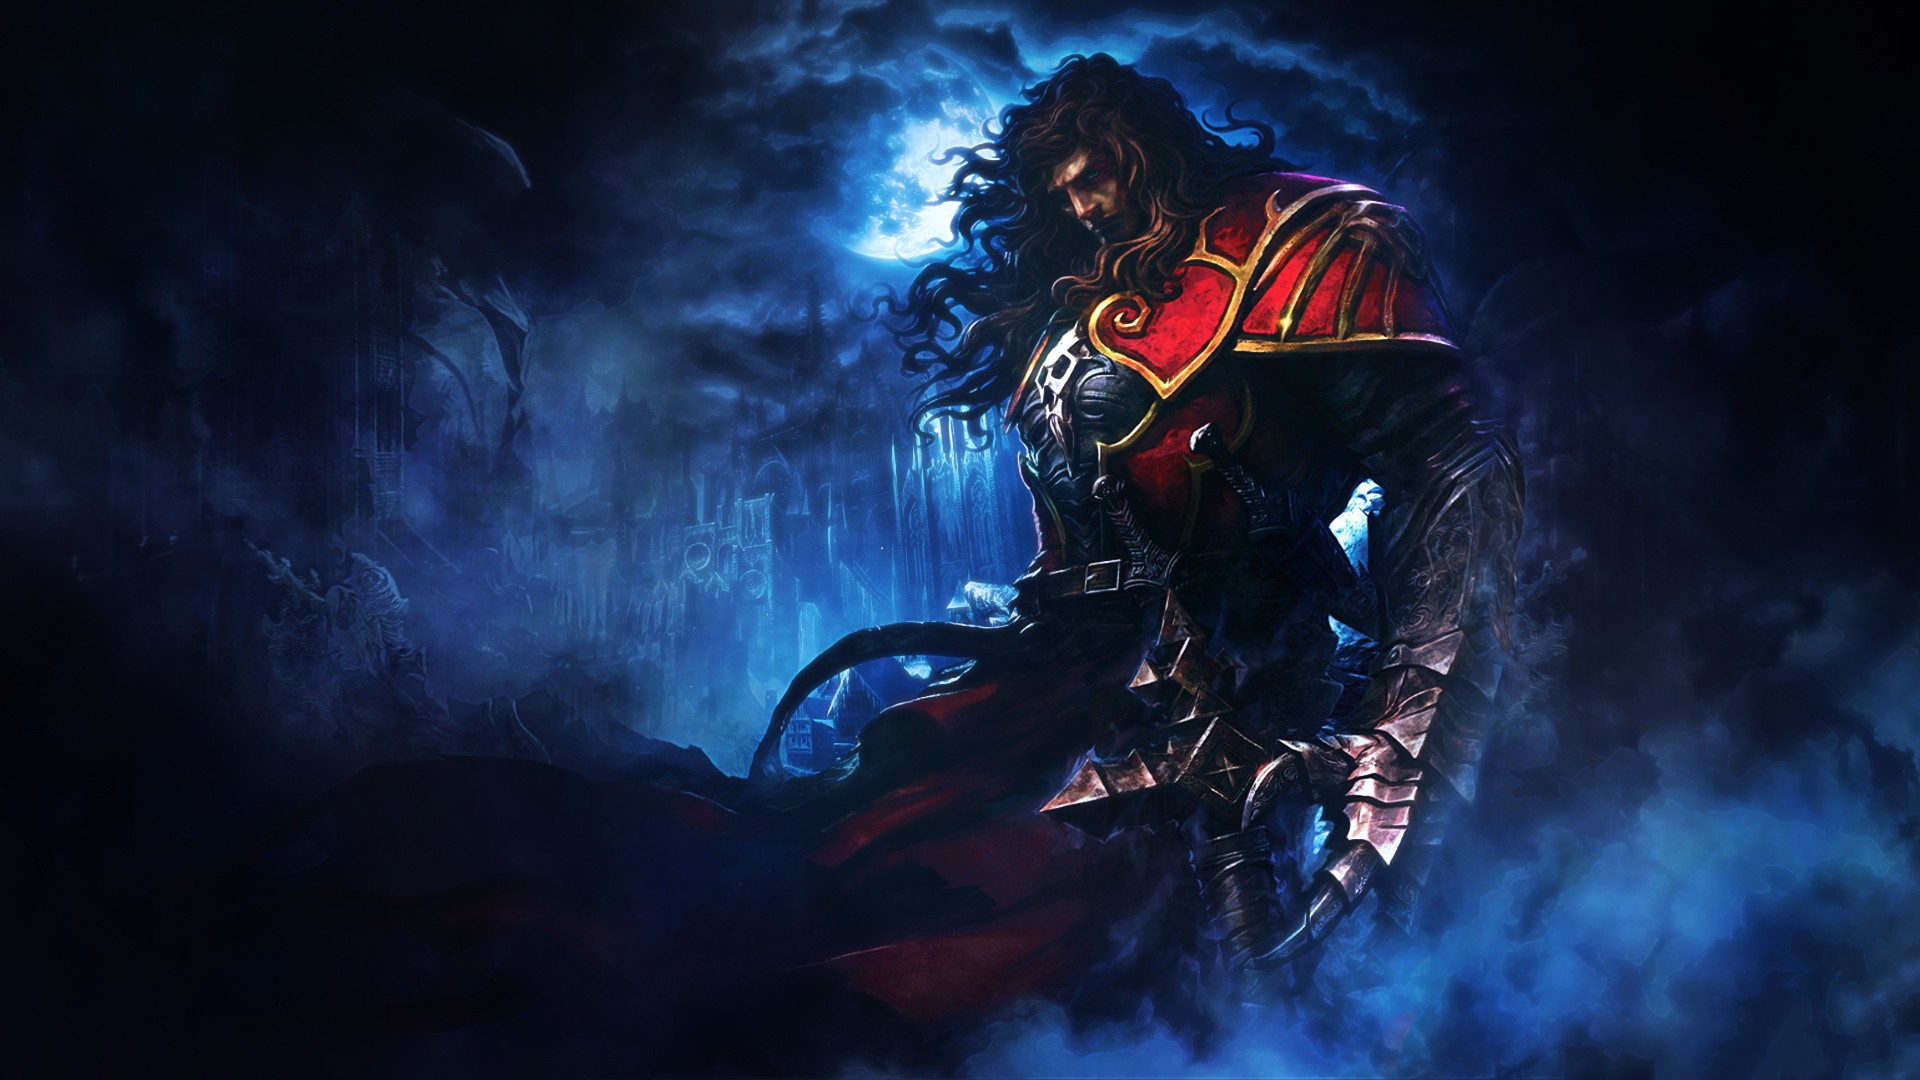 Descargar fondos de escritorio de Castlevania: Lords Of Shadow HD